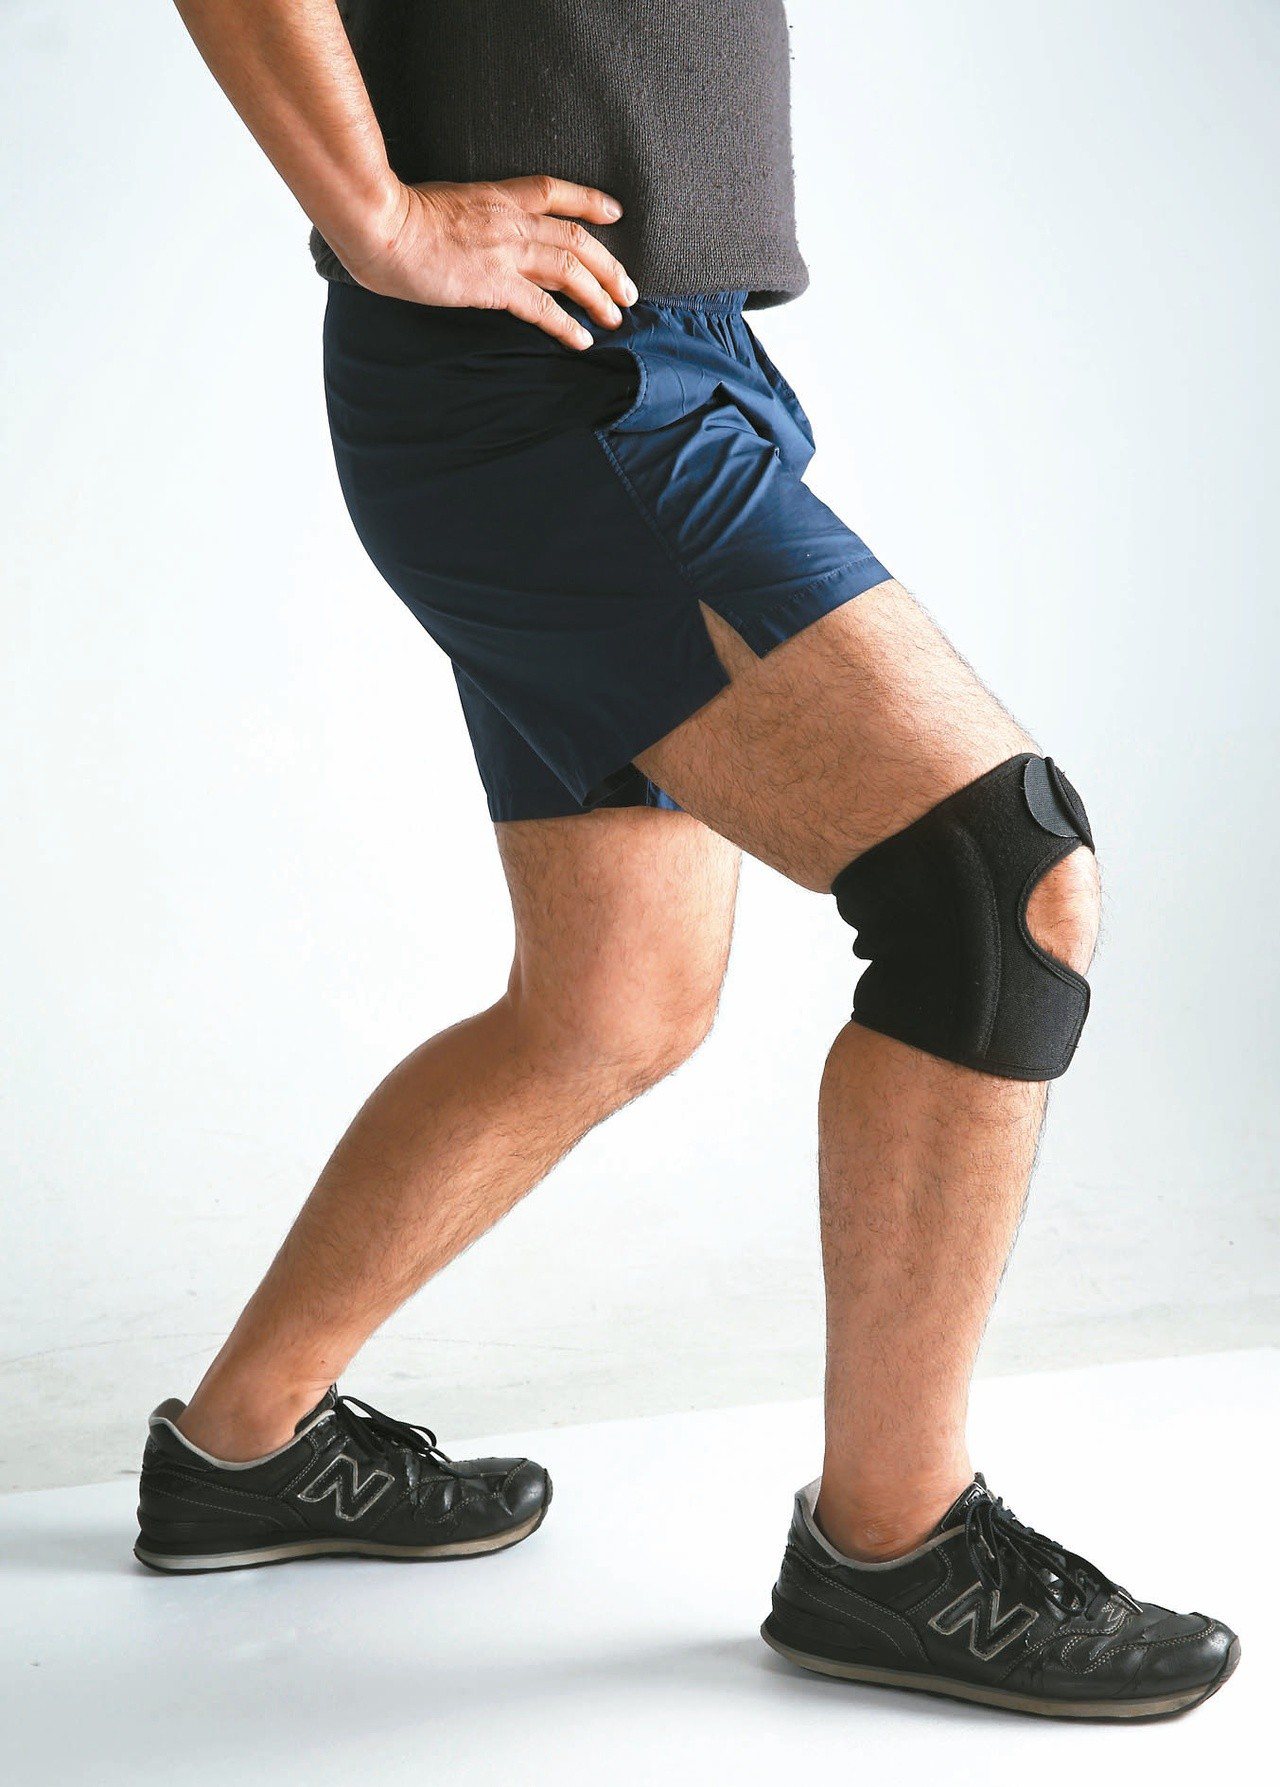 醫師表示，只要關節沒有發炎腫痛，運動仍是膝關節保養及強化骨質密度的最有效處方，做對運動，就能兩全其美。